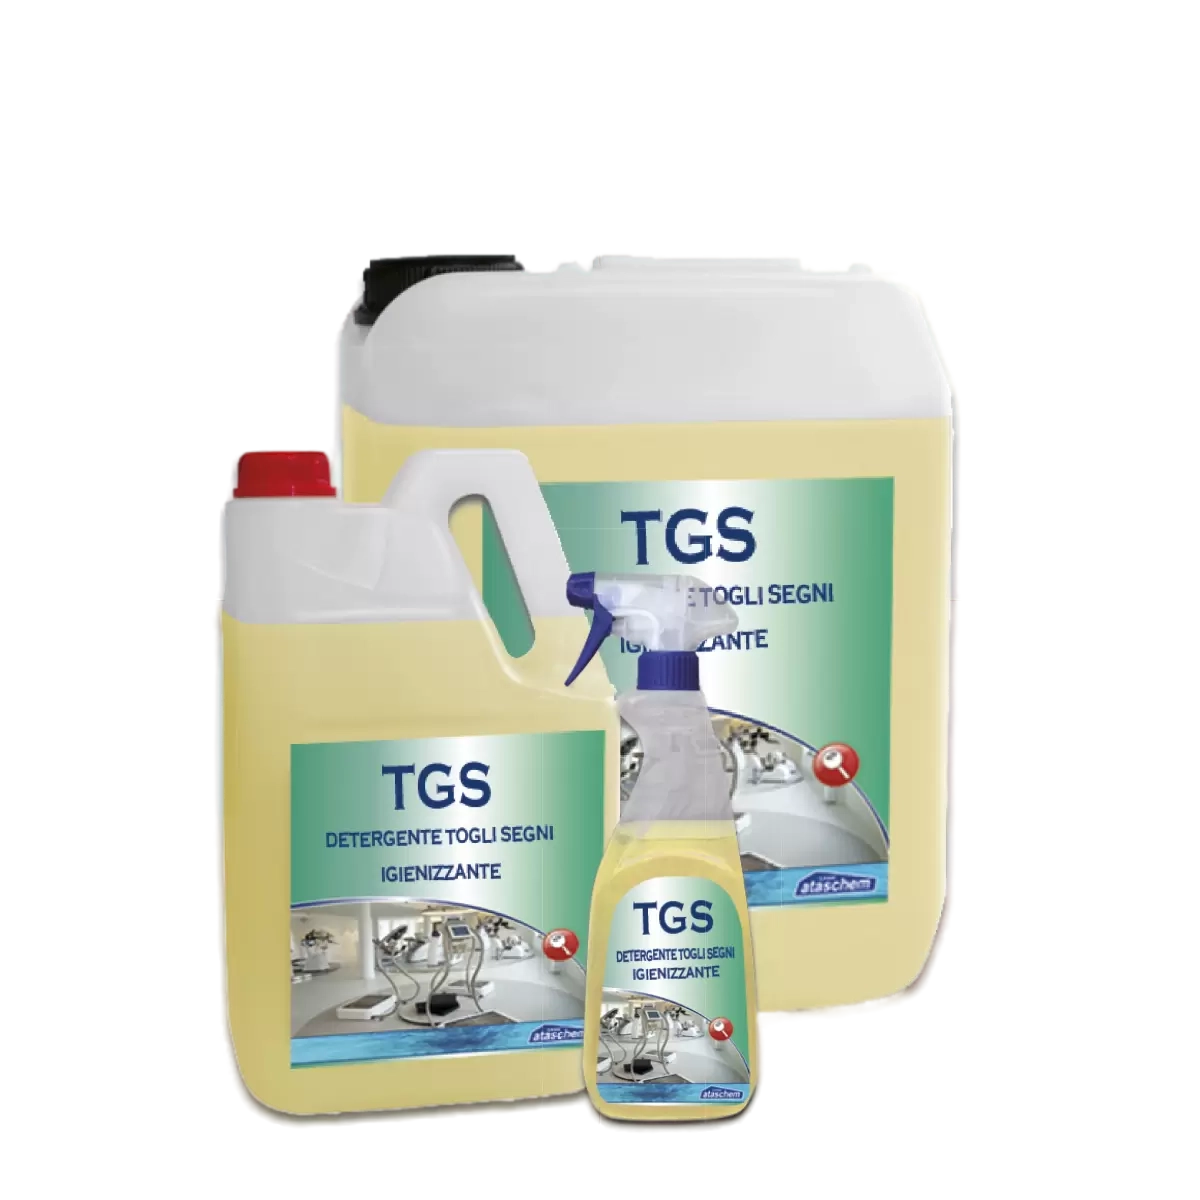 TGS Cредство для чистки пластмассы, керамики, линолеума, пятновыводитель 5 кг (канистра)